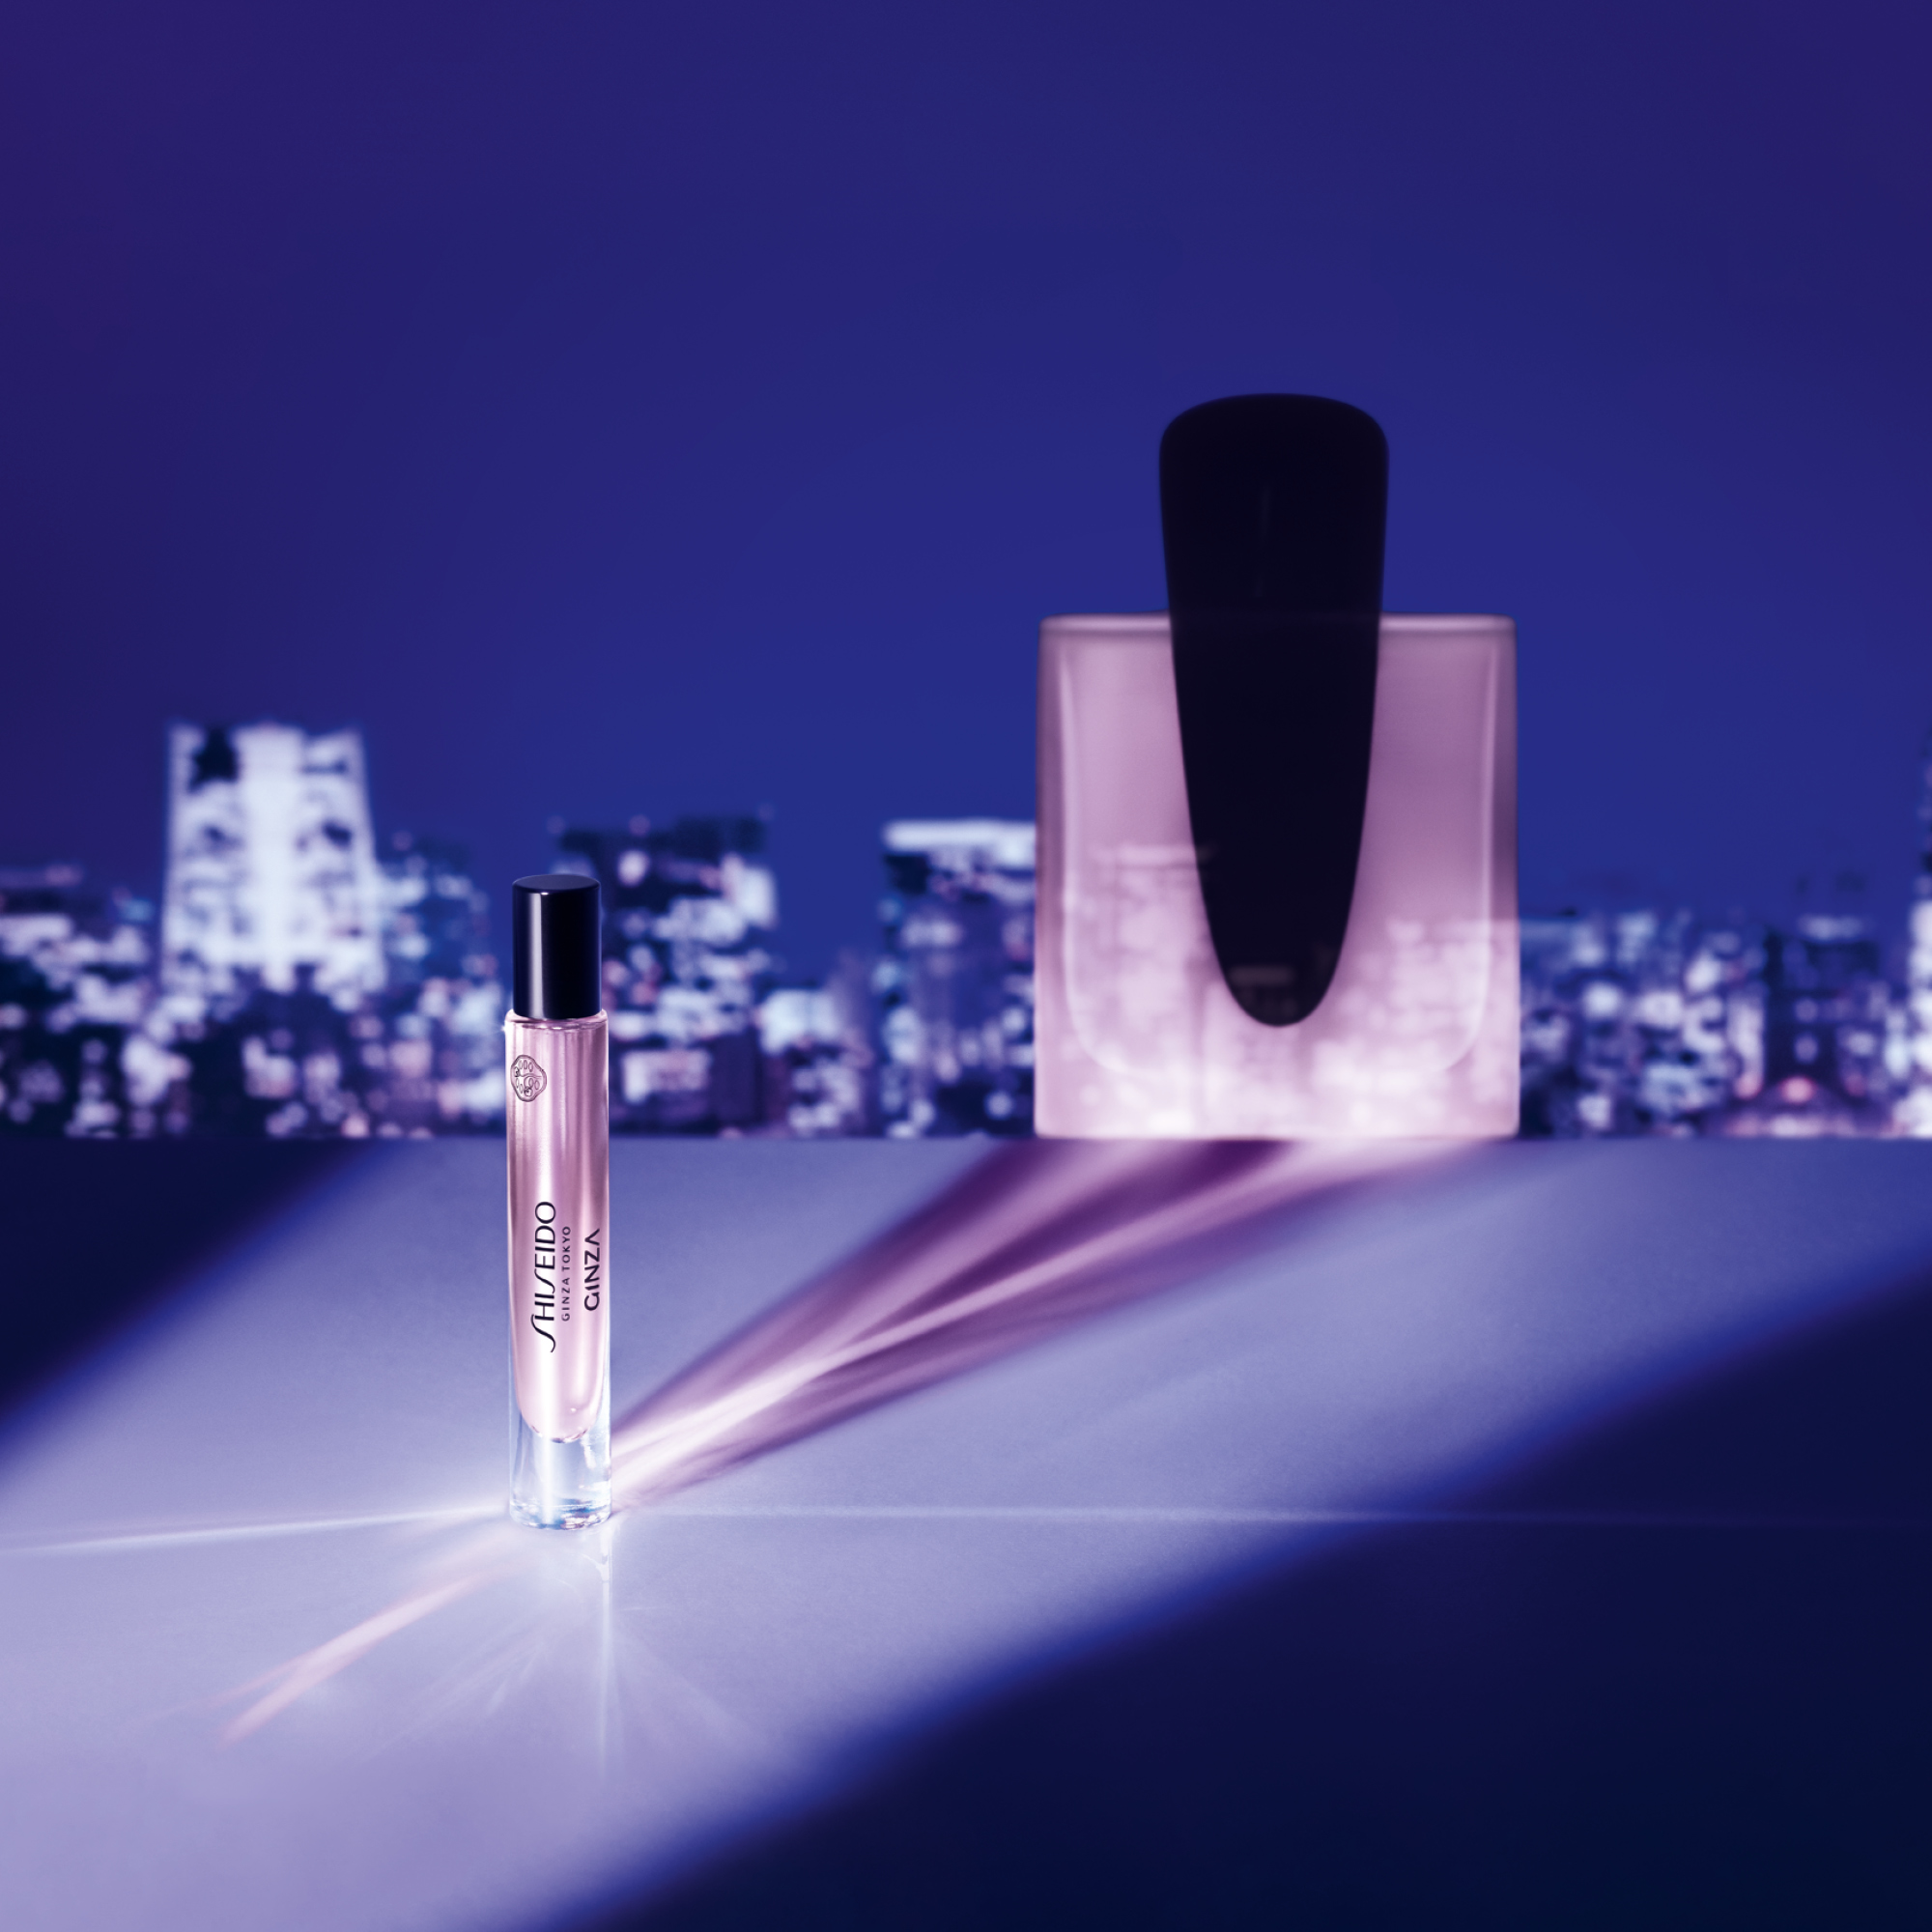 GINZA, la nuova fragranza femminile Shiseido in un flacone da viaggio.